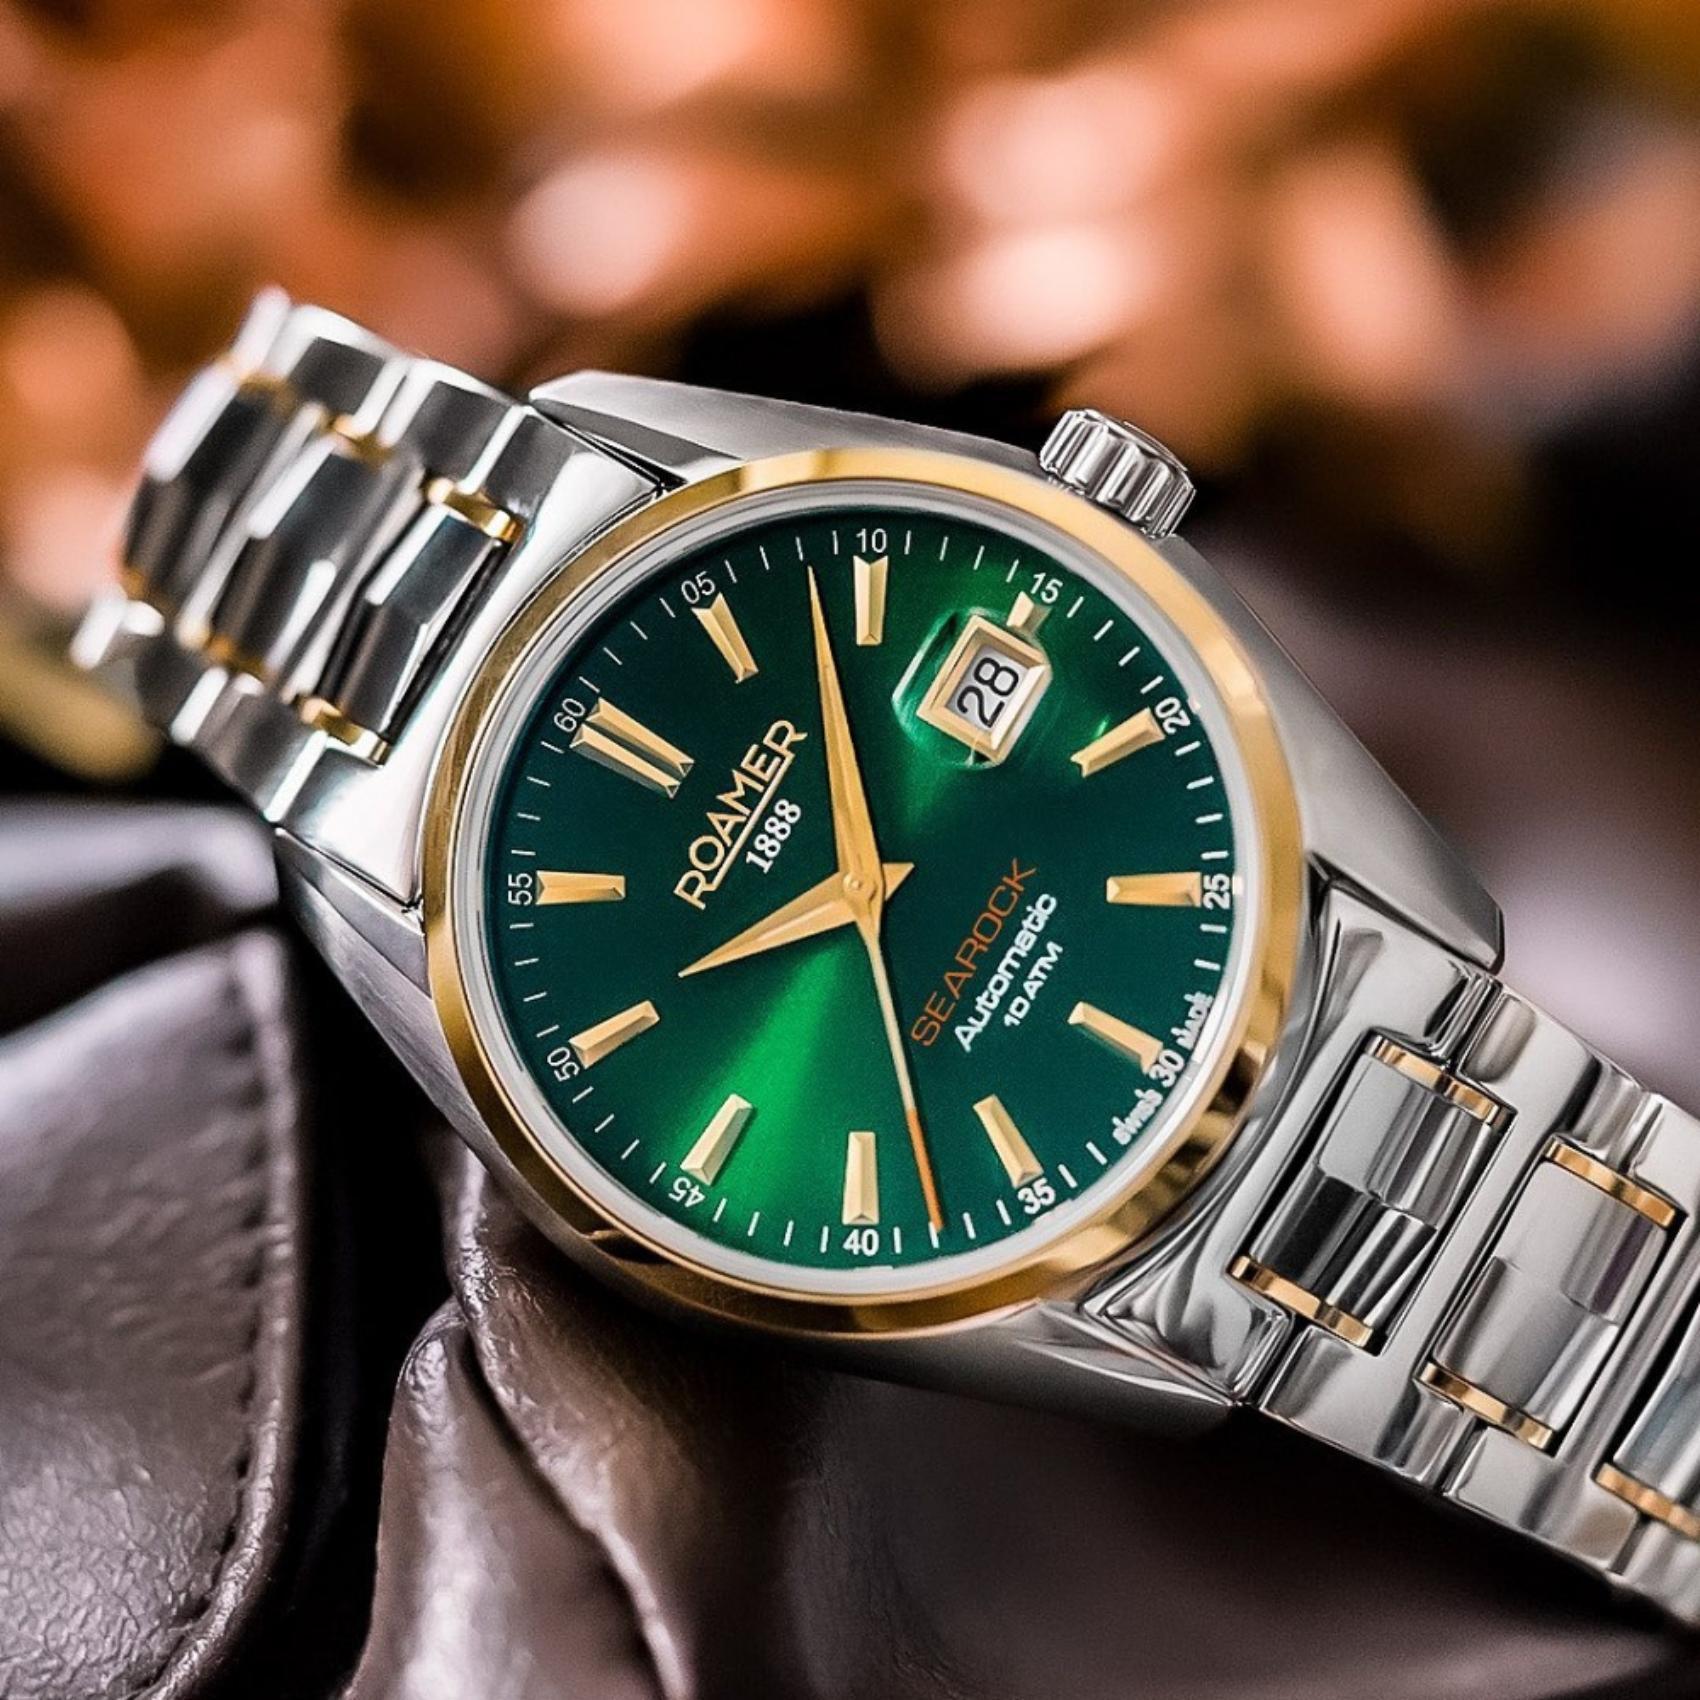 Αυτόματο ρολόι open back Roamer Searock Automatic II 210665-47-75-20 με δίχρωμο μπρασελέ, πράσινο καντράν με ένδειξη ημερομηνίας και κάσα διαμέτρου 42mm.